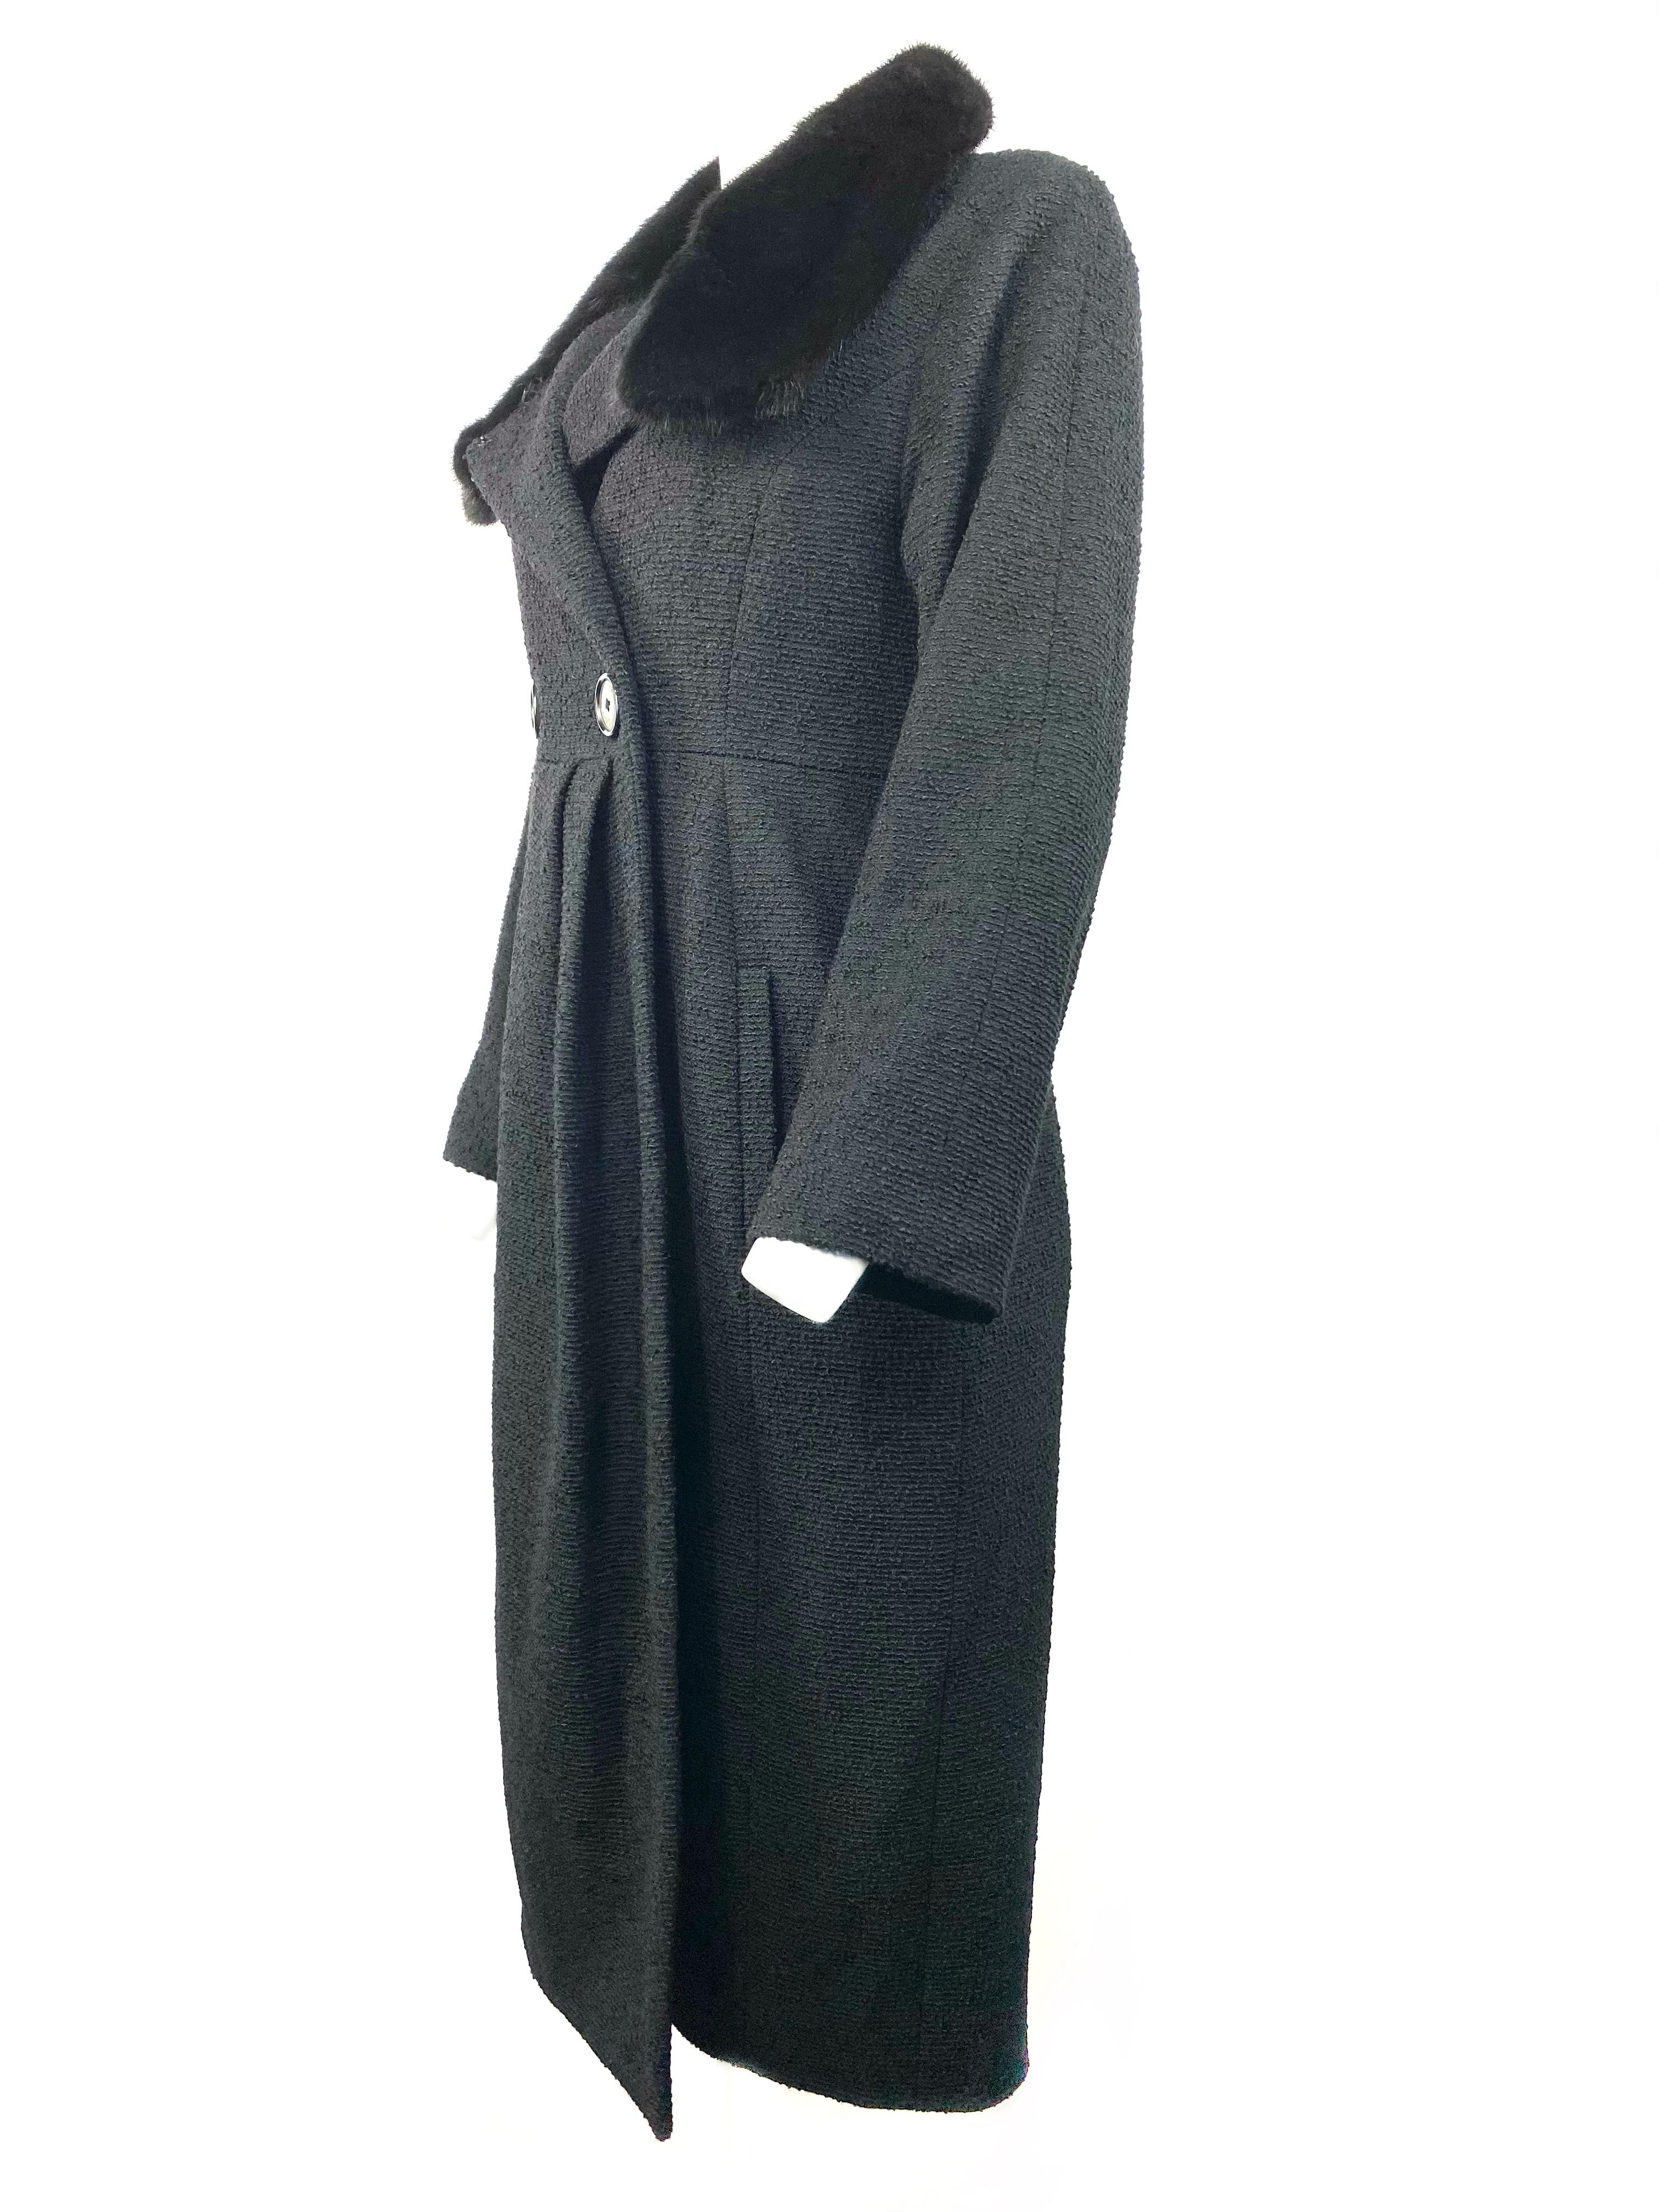 Christian Dior - Veste manteau en tweed de laine noir et fourrure, taille 40 1